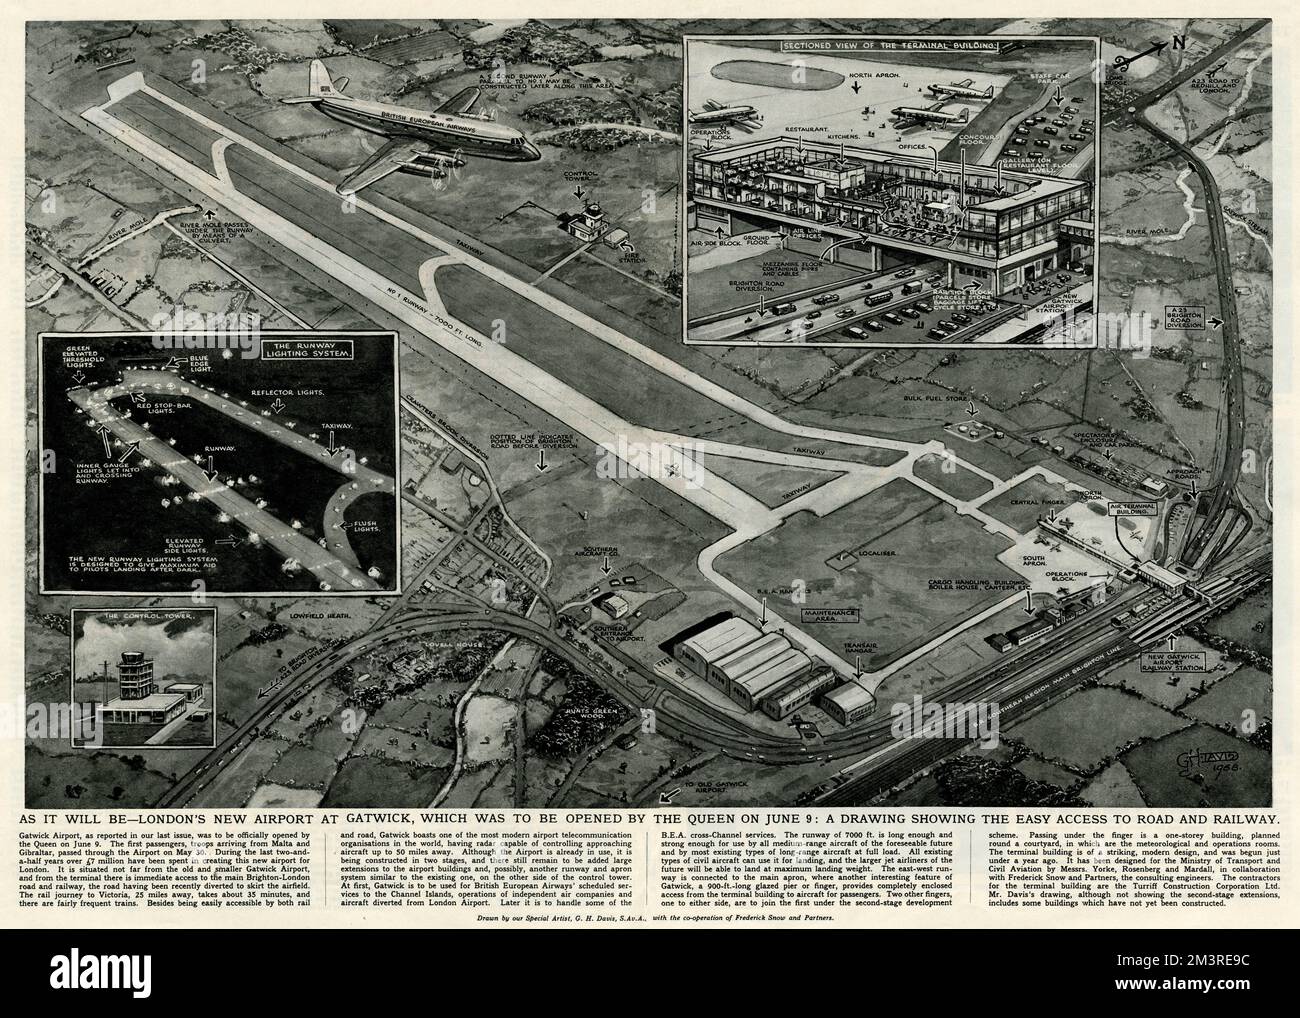 Illustrazione di George Horace Davis, che mostra i collegamenti stradali e ferroviari con il nuovo aeroporto internazionale di Gatwick e la pista lunga 7000ft con luci riflettenti. La Regina Elisabetta II, ufficiale, ha riaperto il nuovo aeroporto di Gatwick il 9th giugno 1958, costando più di 7,8 milioni di dollari. 1958 Foto Stock